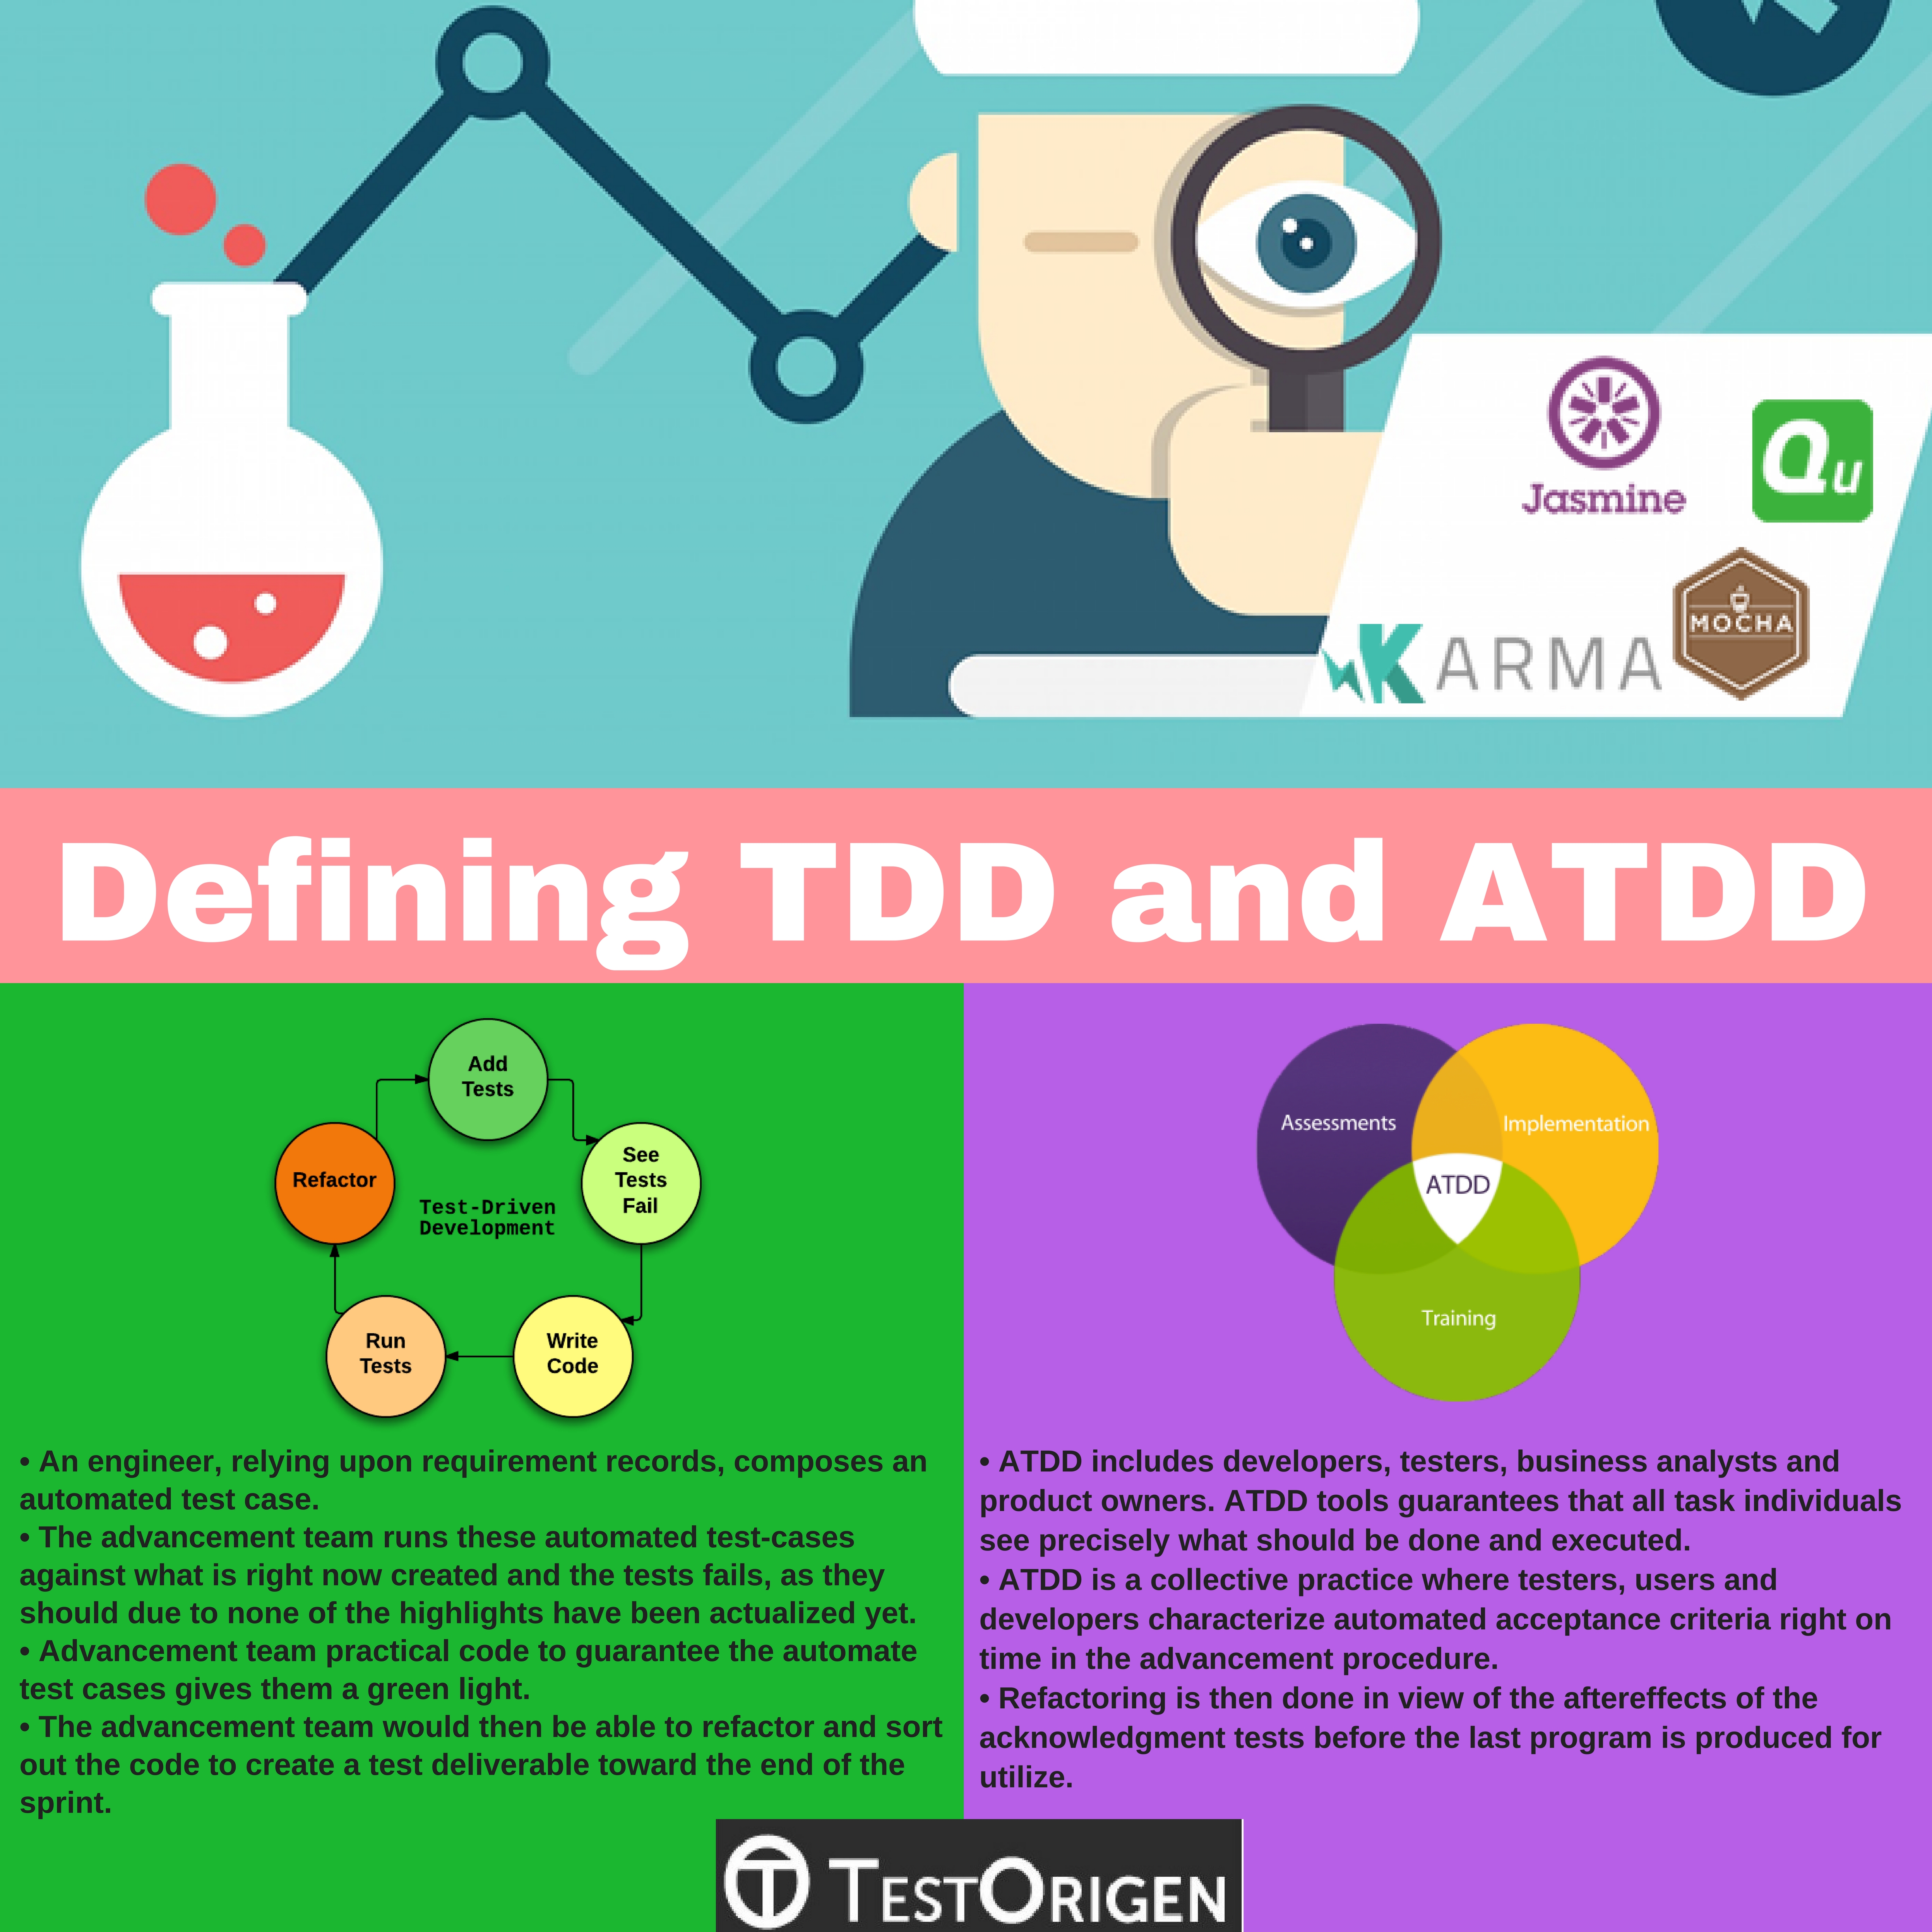 Defining TDD and ATDD